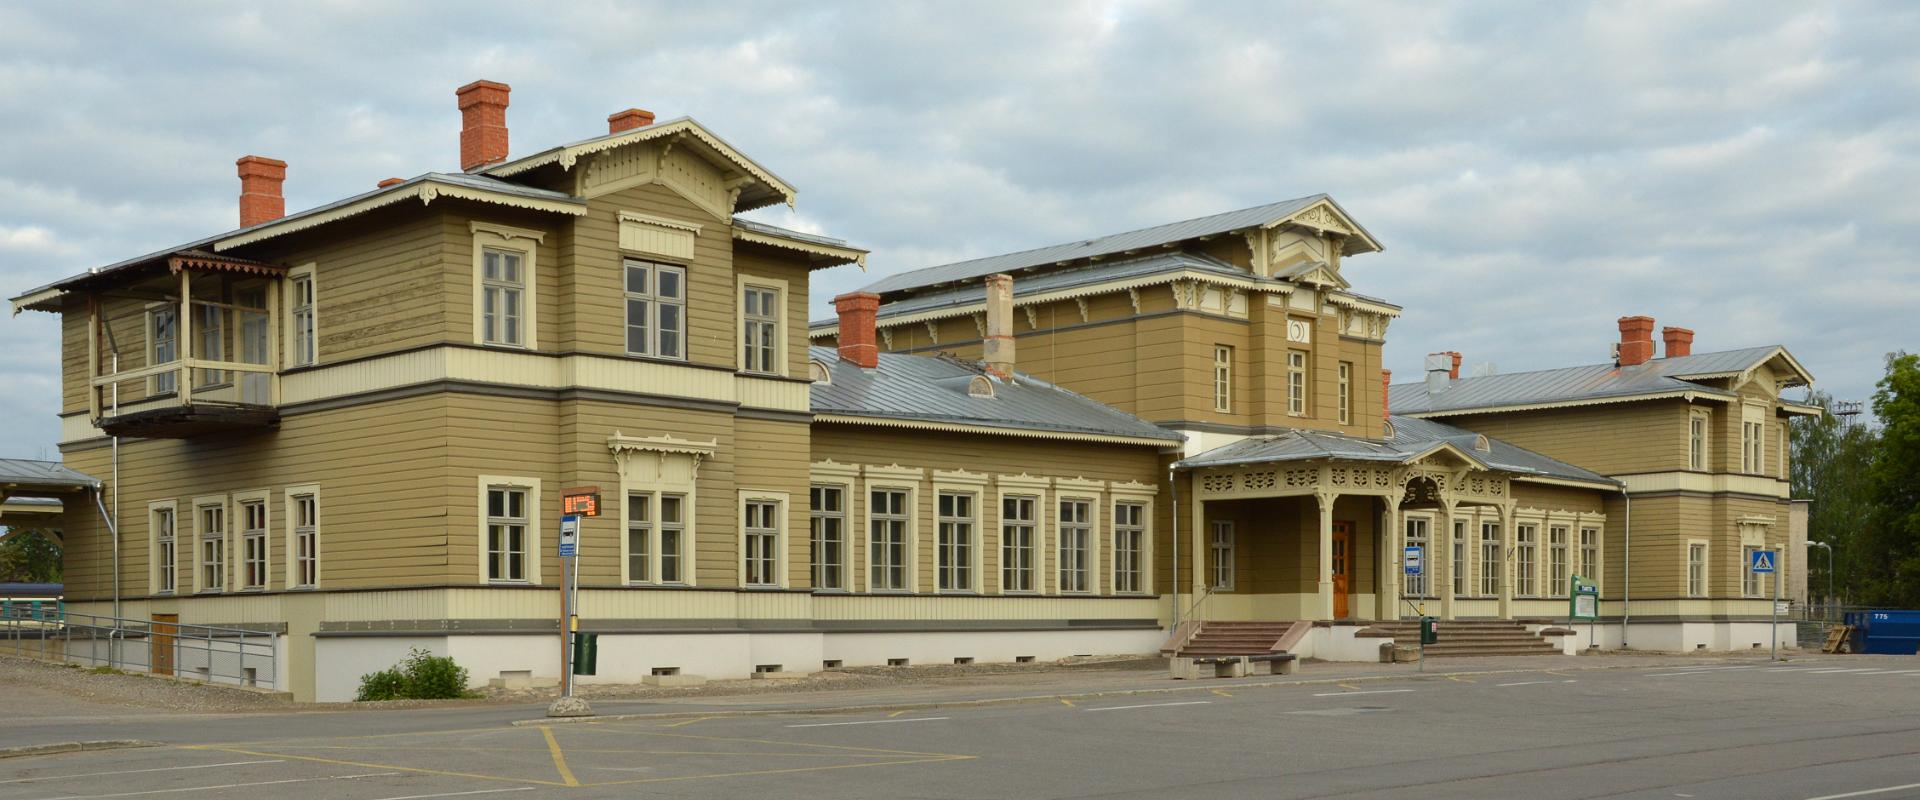 Bahnhof von Tartu